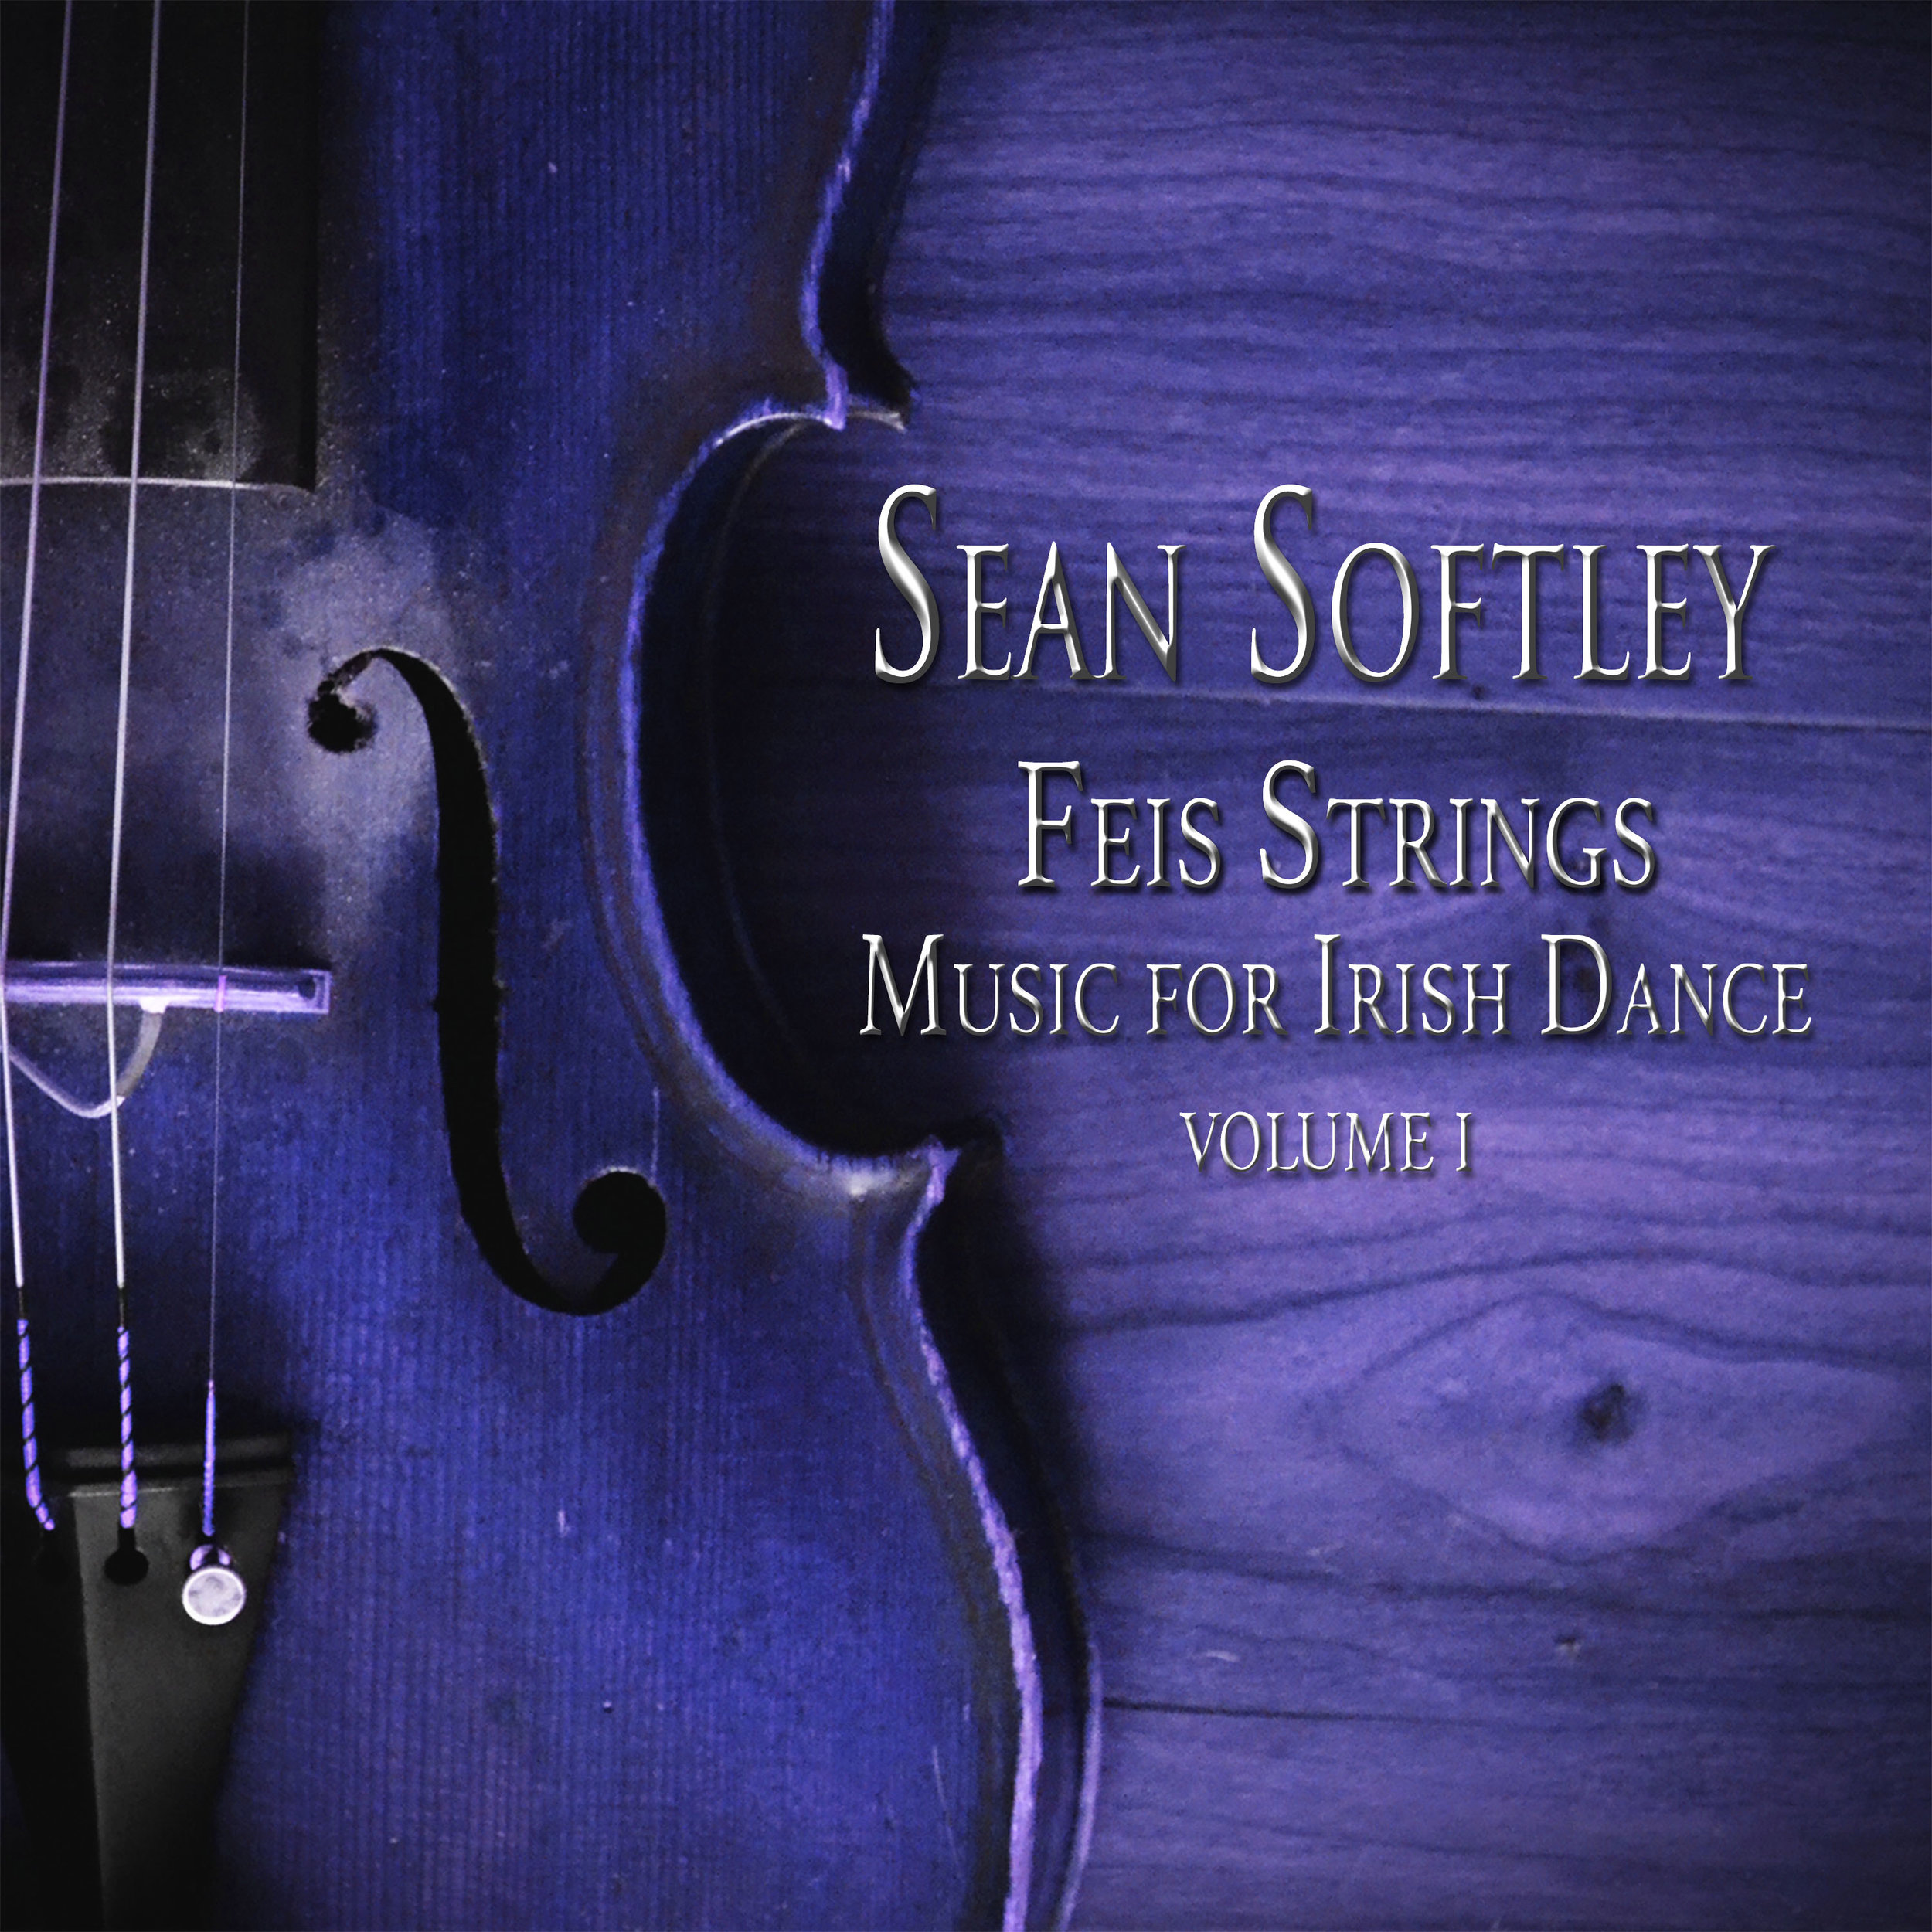 Sean Softley Feis Strings Vol 1 Large.jpg